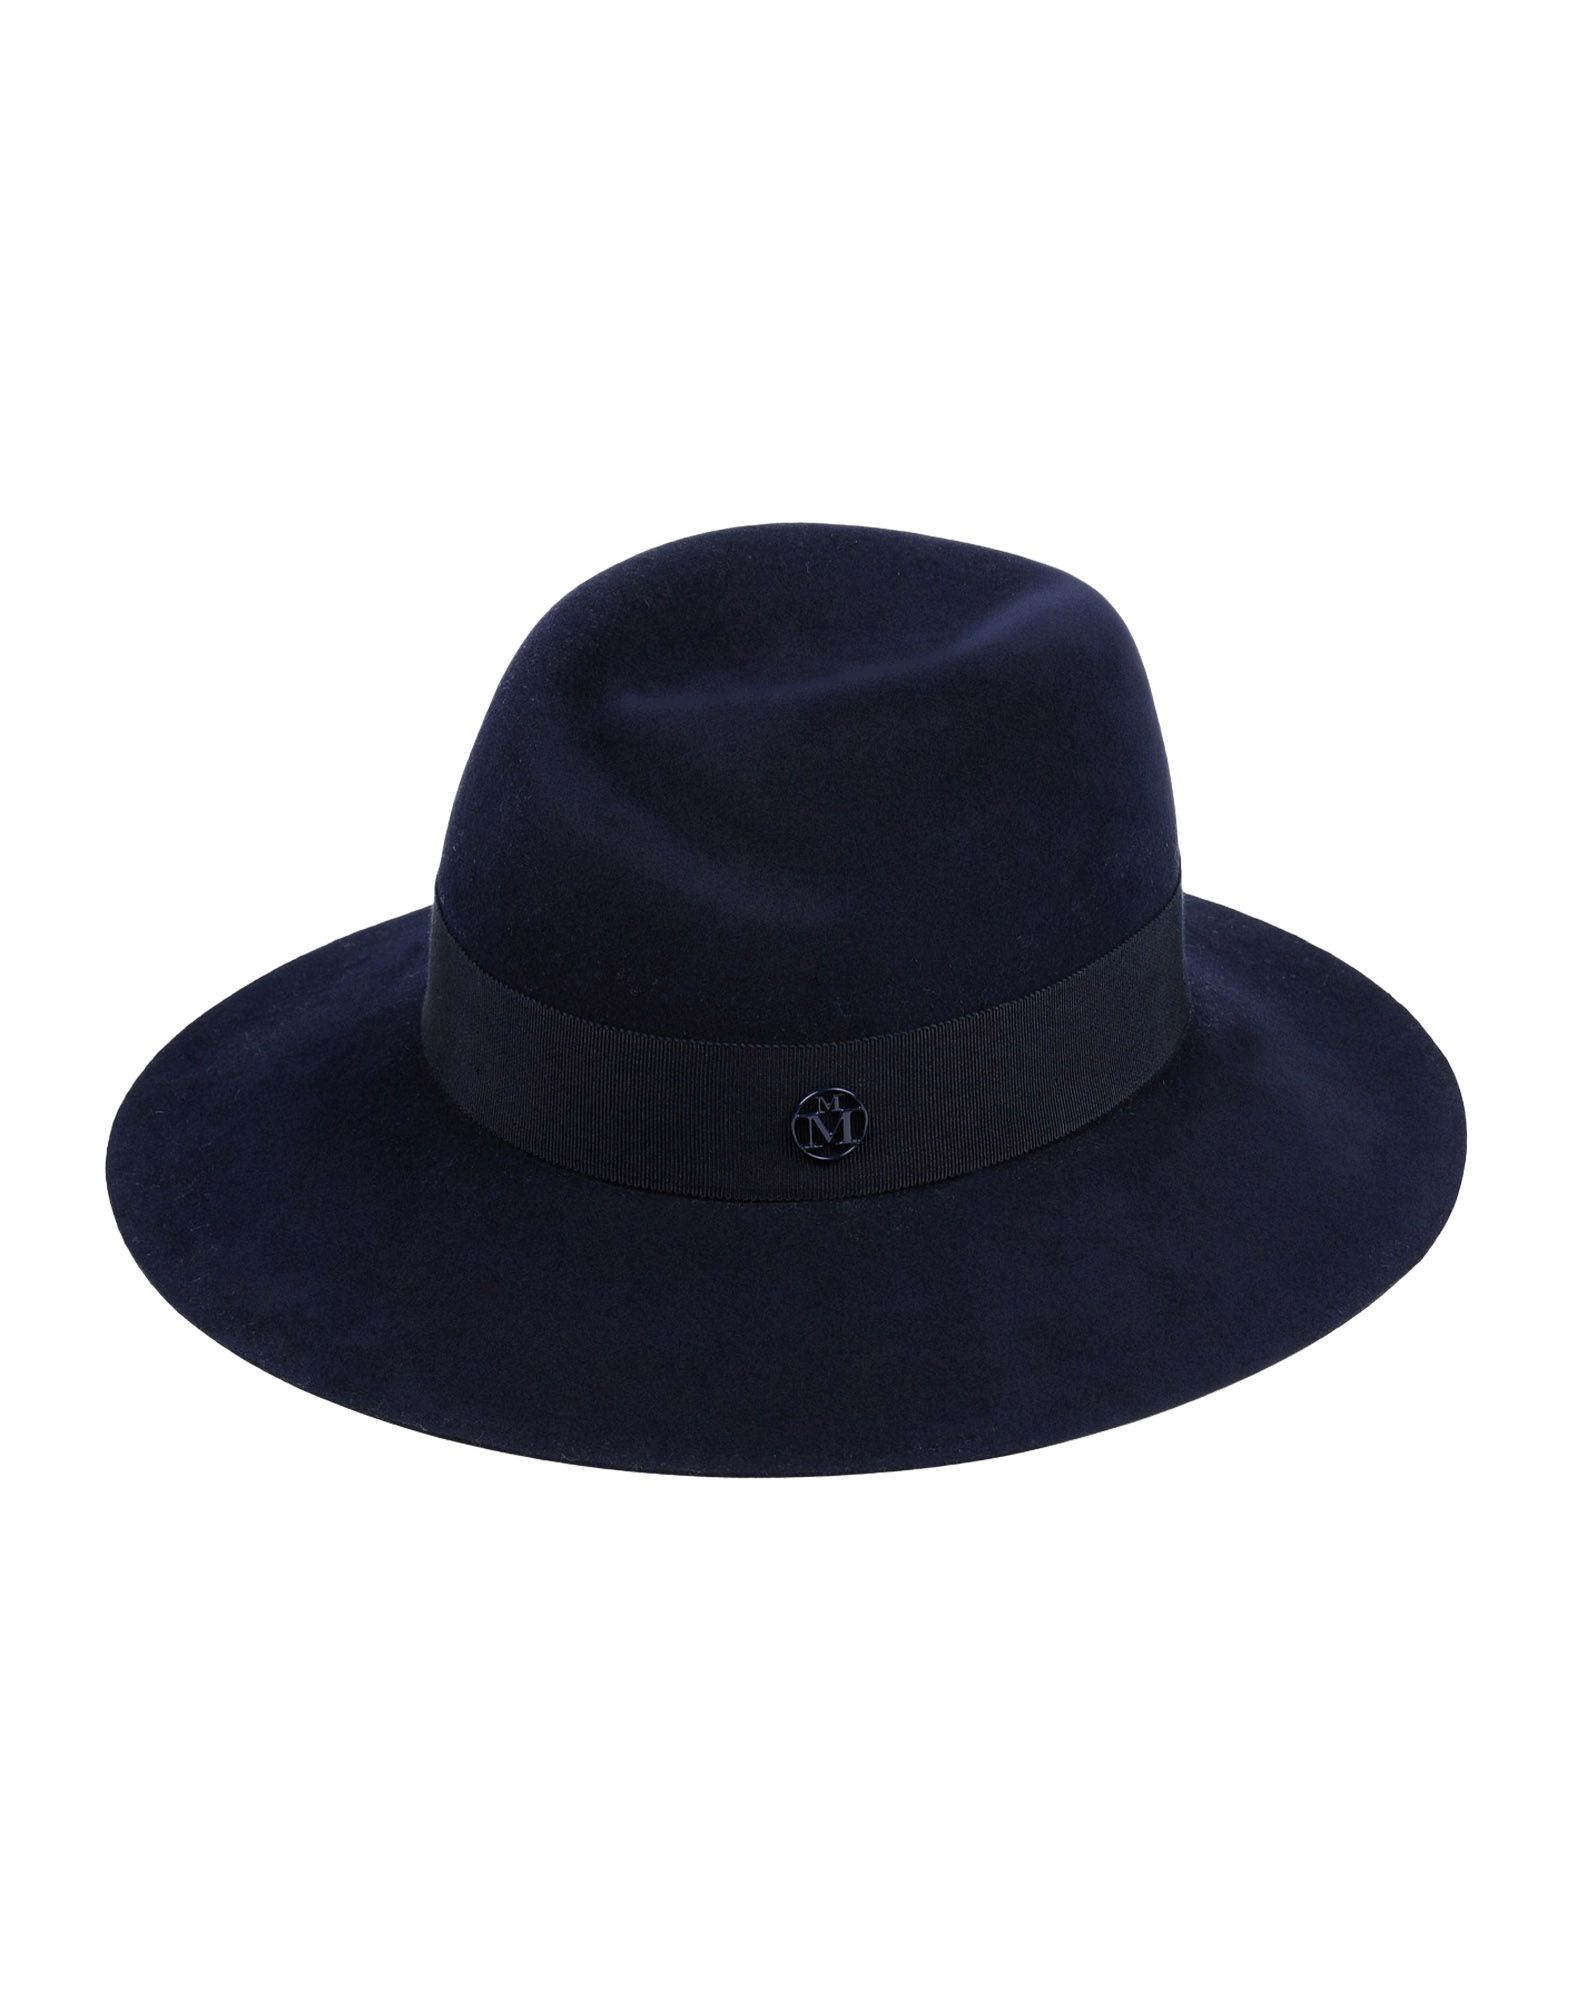 《送料無料》MAISON MICHEL レディース 帽子 ダークブルー S 紡績繊維